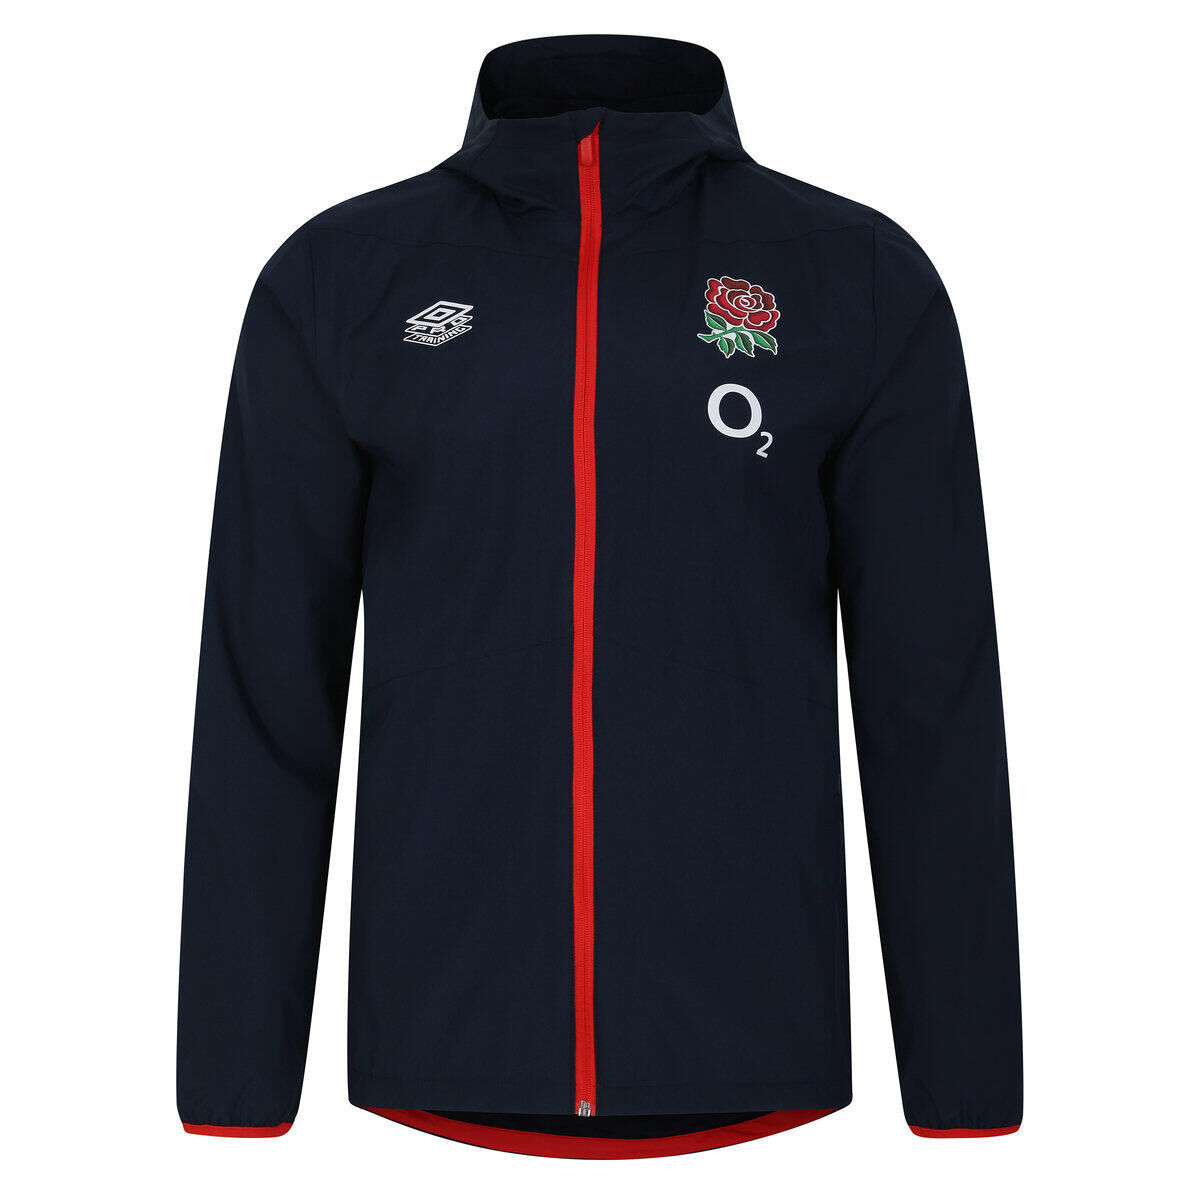 UMBRO Childrens/Kids 23/24 England Rugby Track Jacket (Navy Blazer/Flame Scarlet)